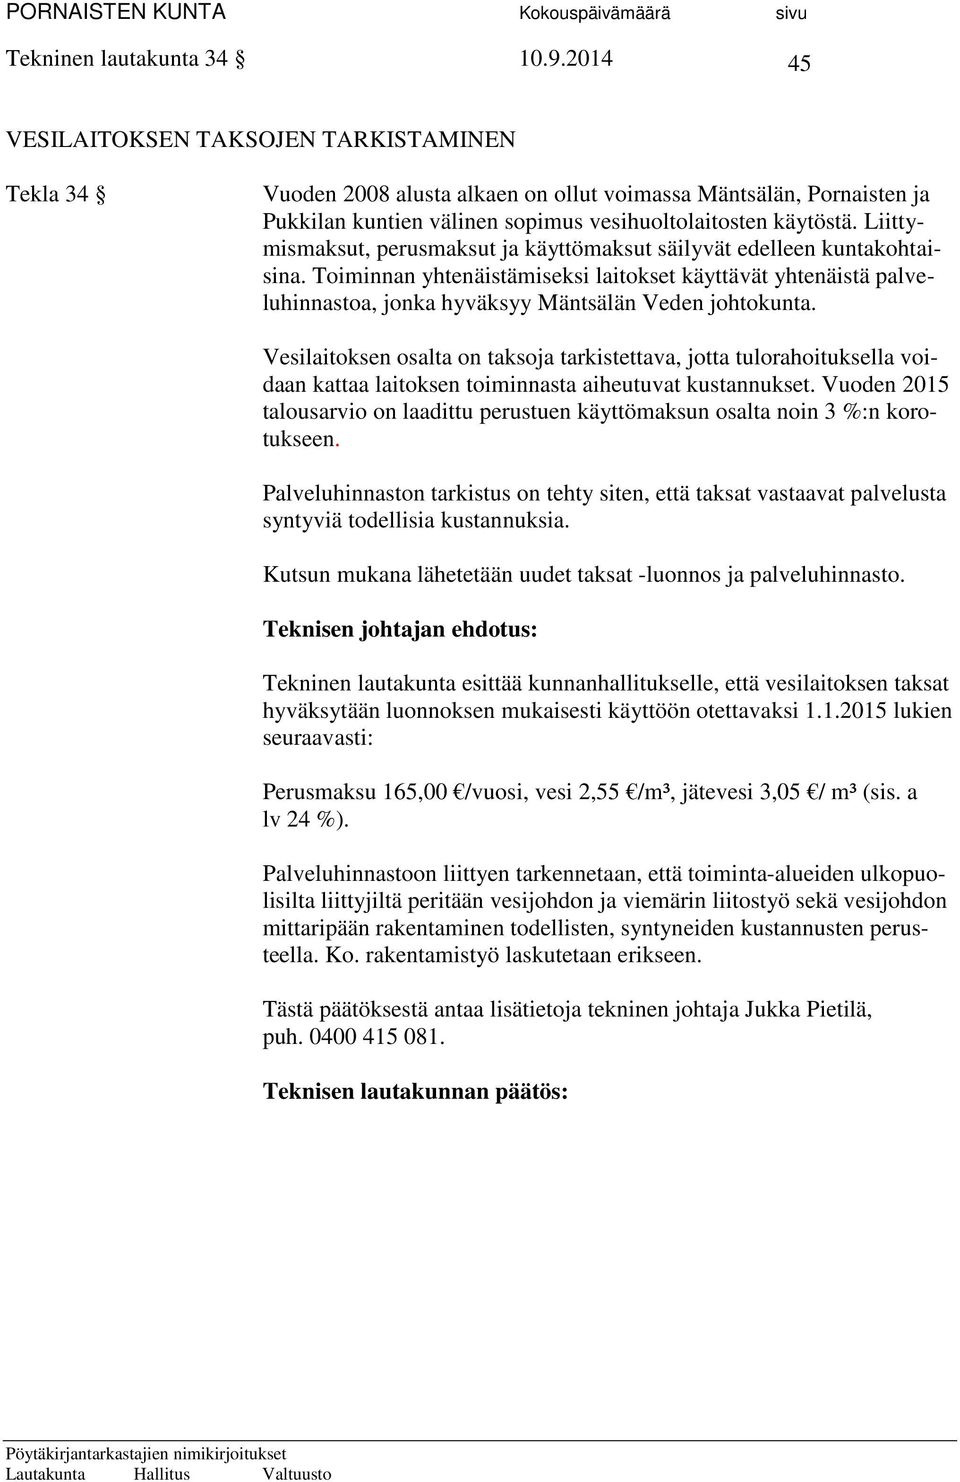 Liittymismaksut, perusmaksut ja käyttömaksut säilyvät edelleen kuntakohtaisina. Toiminnan yhtenäistämiseksi laitokset käyttävät yhtenäistä palveluhinnastoa, jonka hyväksyy Mäntsälän Veden johtokunta.